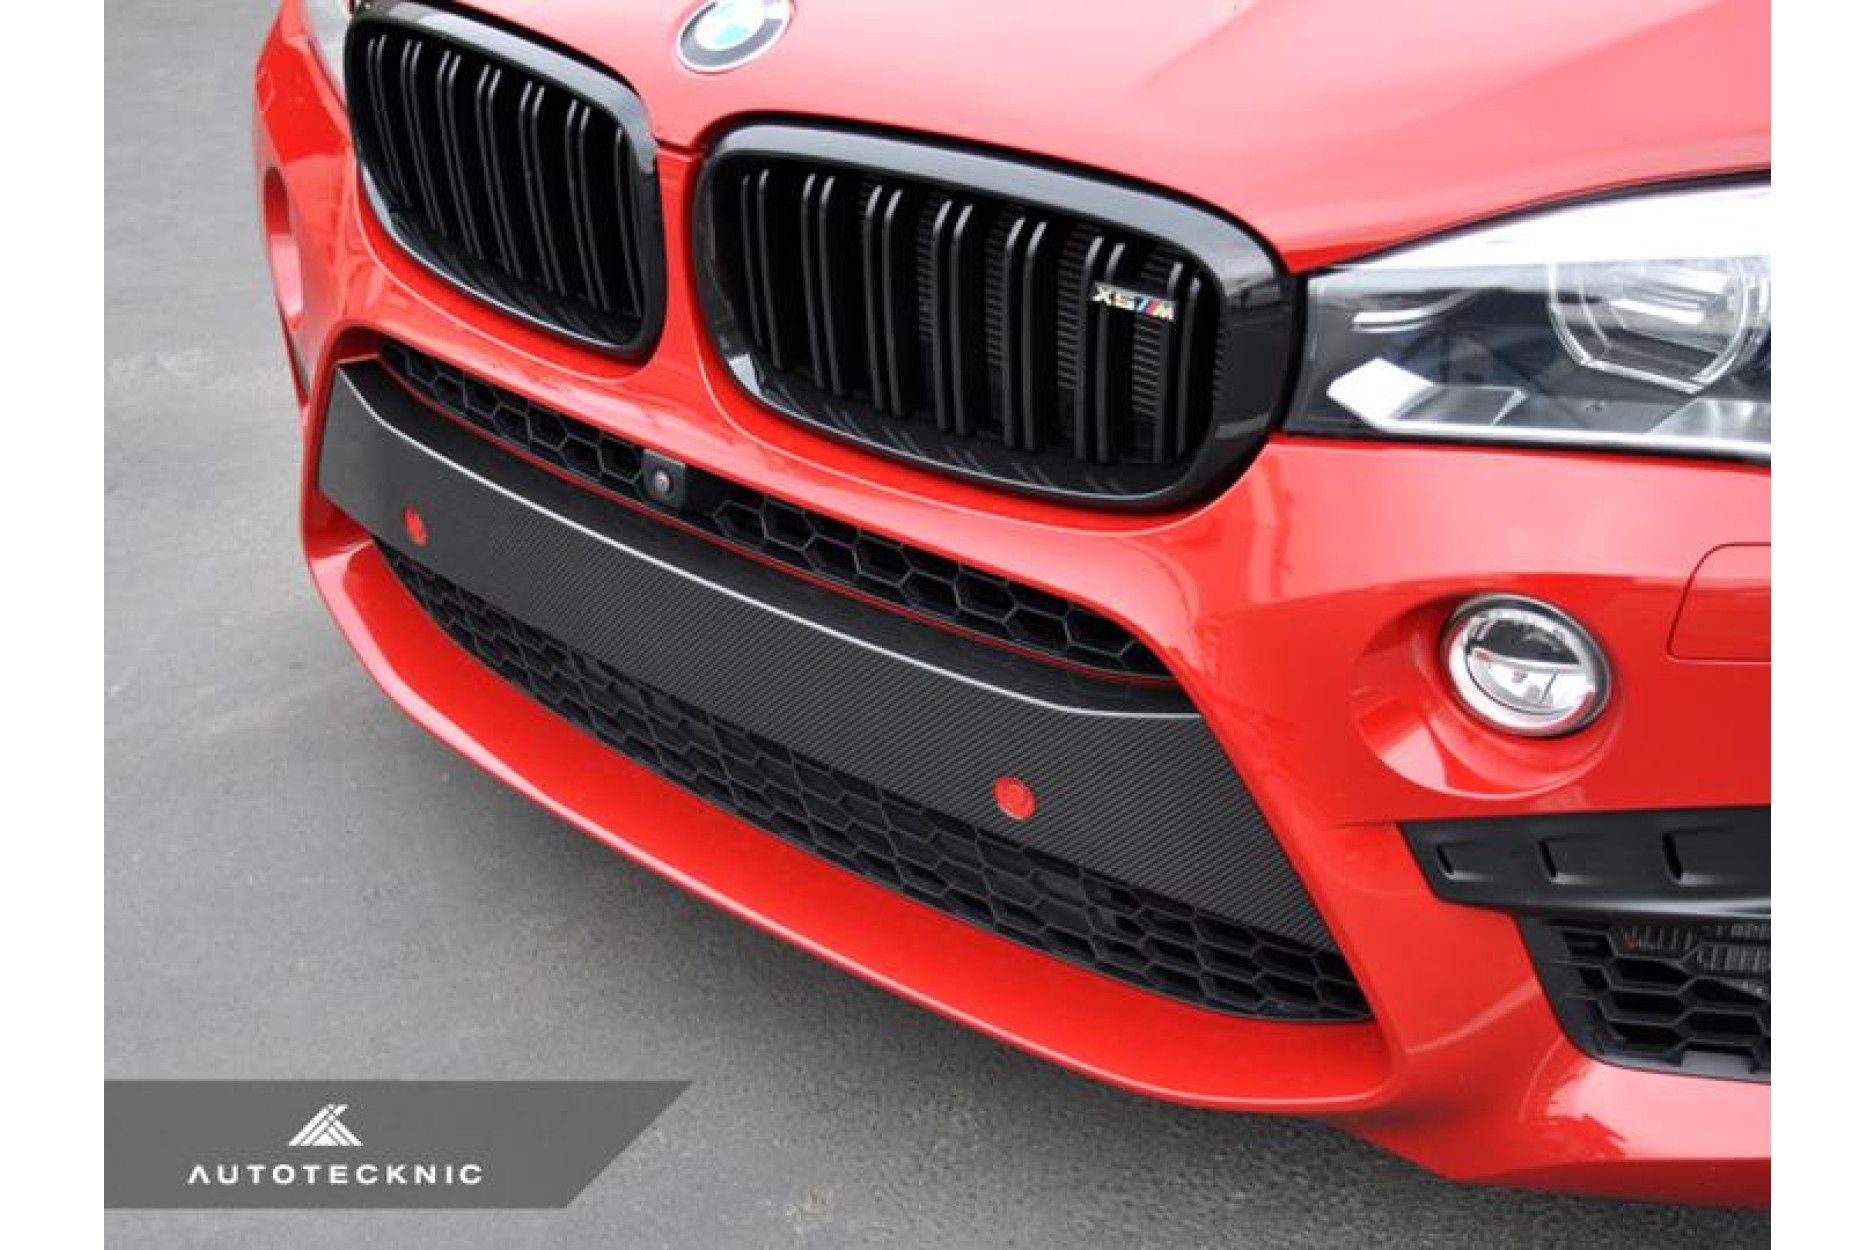 Autotecknic Carbon Frontcover für BMW F85 X5M und F86 X6M - online